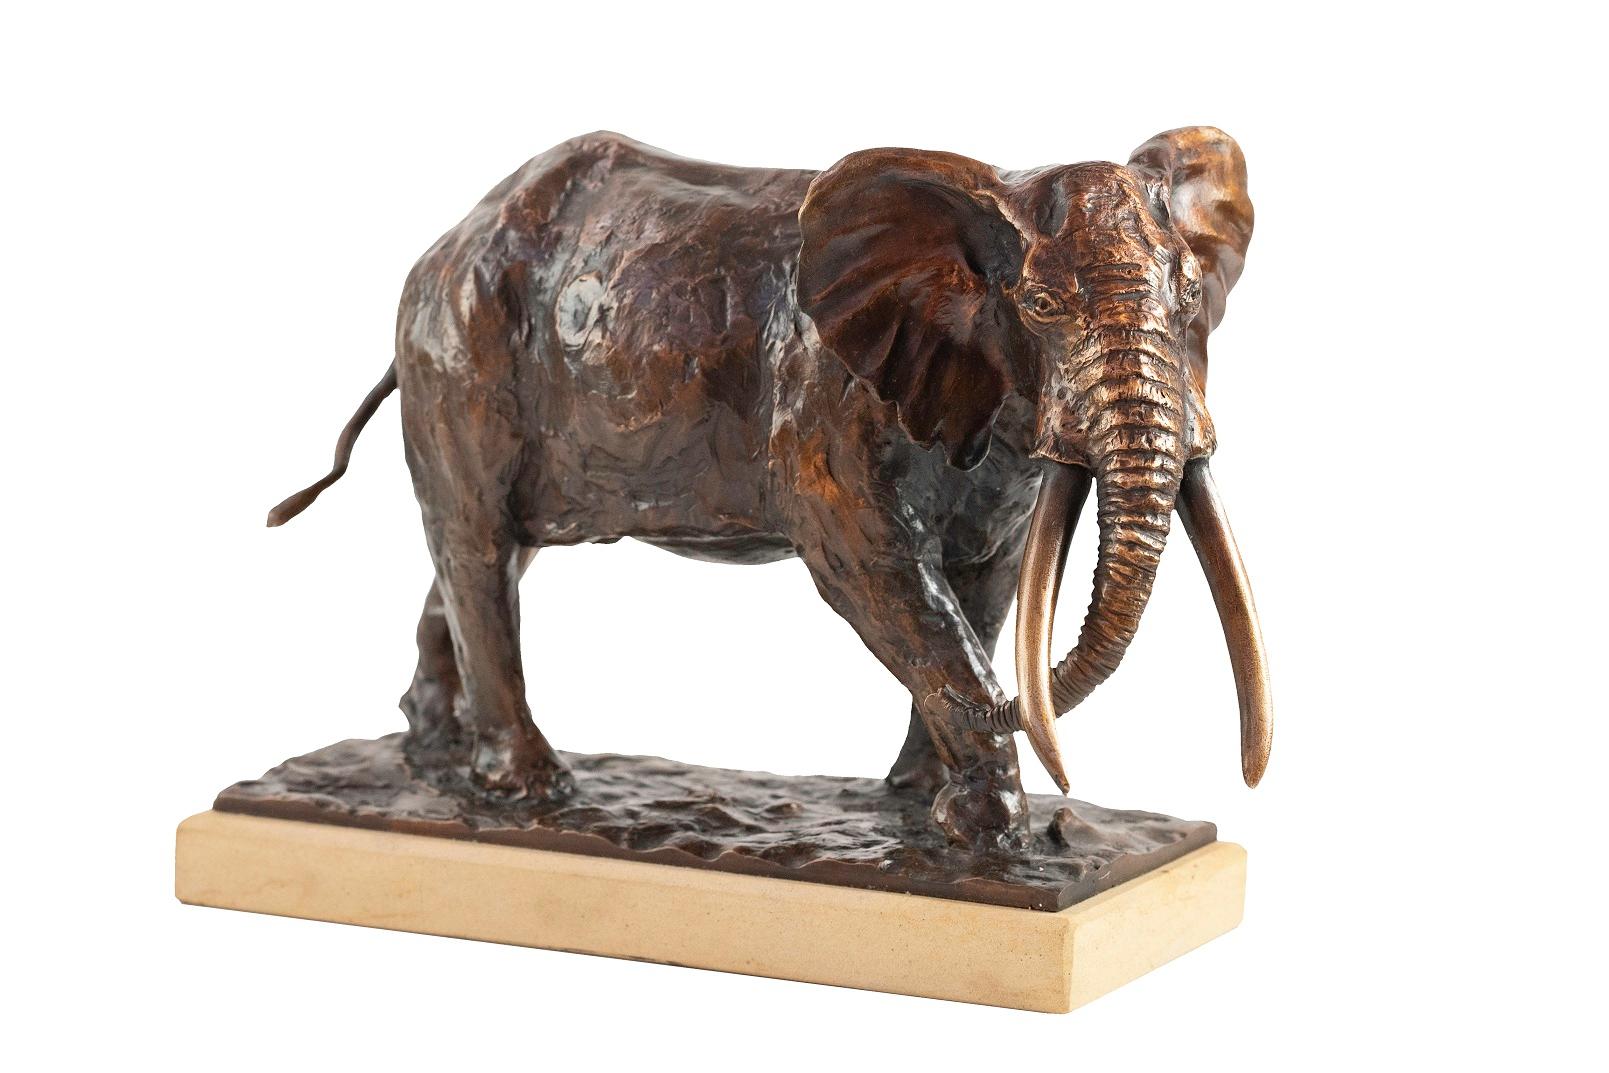 Heinrich Filter Figurative Sculpture - Tusker - African Elephant Bull - Bronze Sculpture